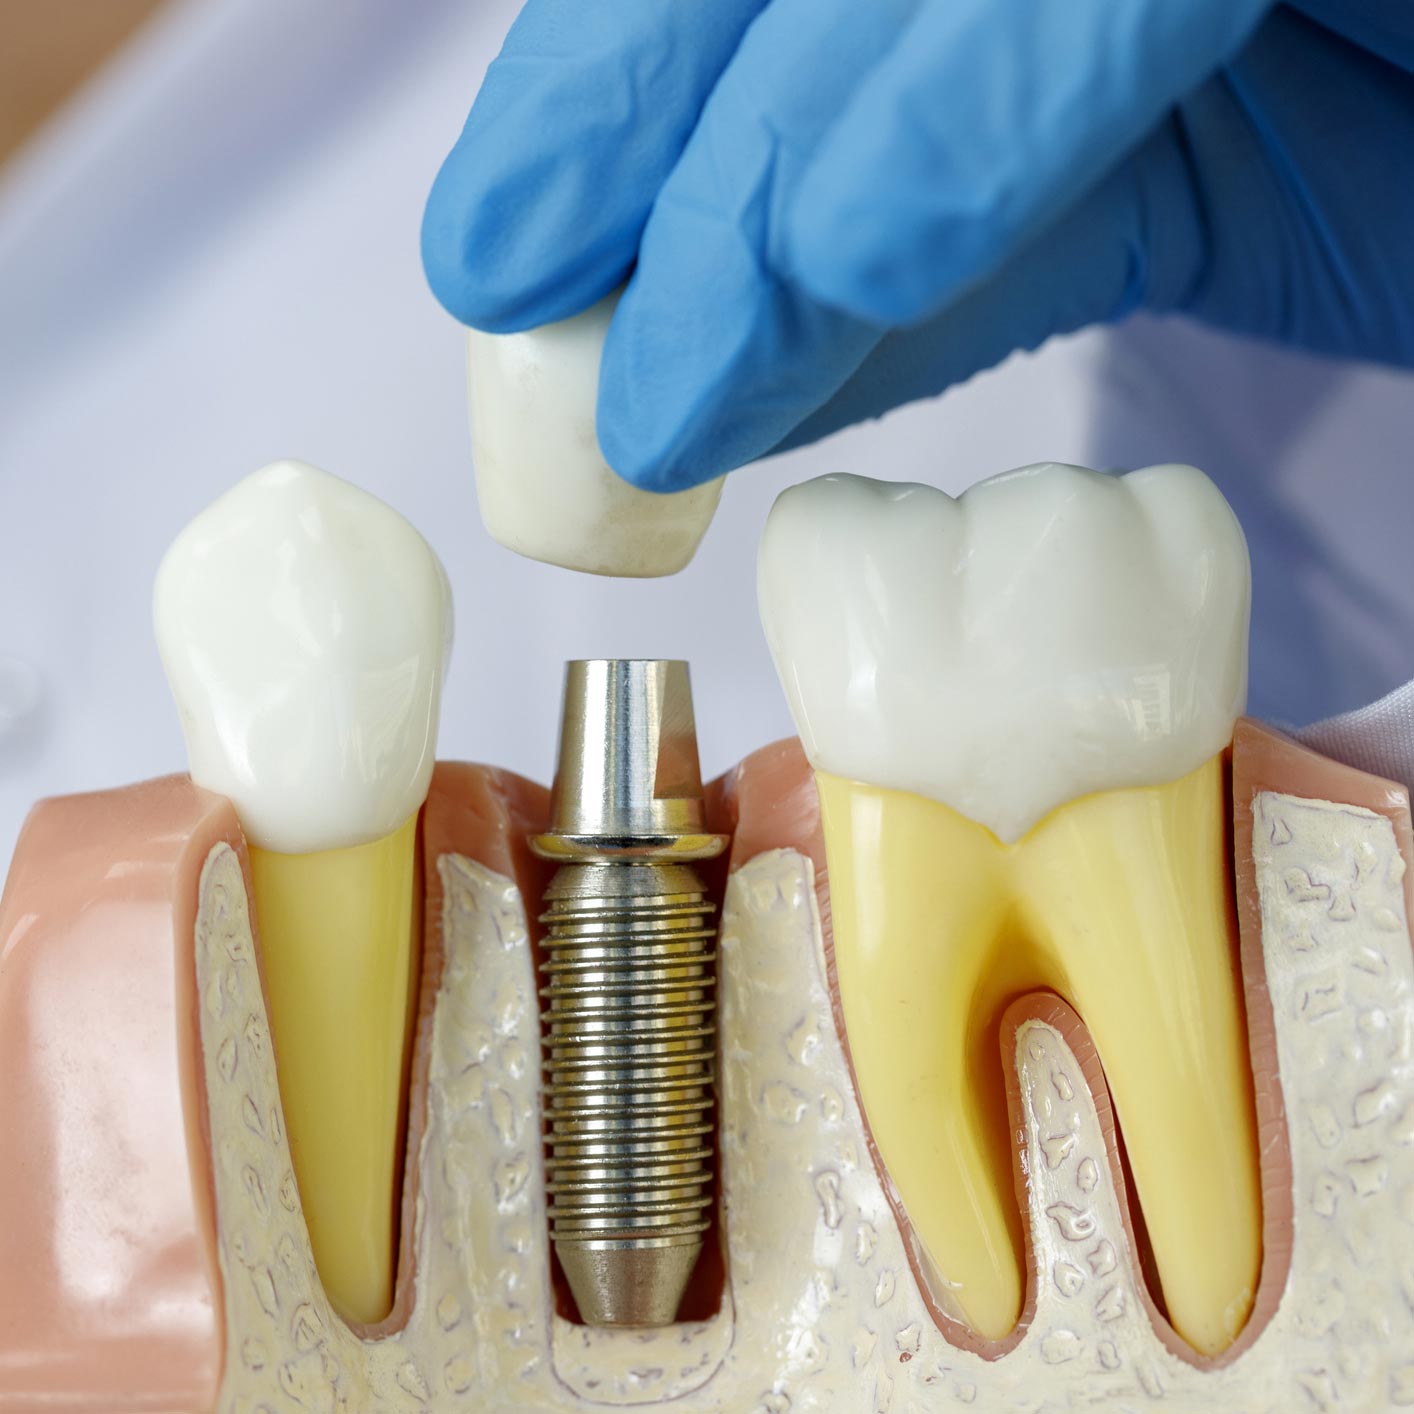 Les aligneurs dentaires sont-ils remboursés par l'assurance maladie ?